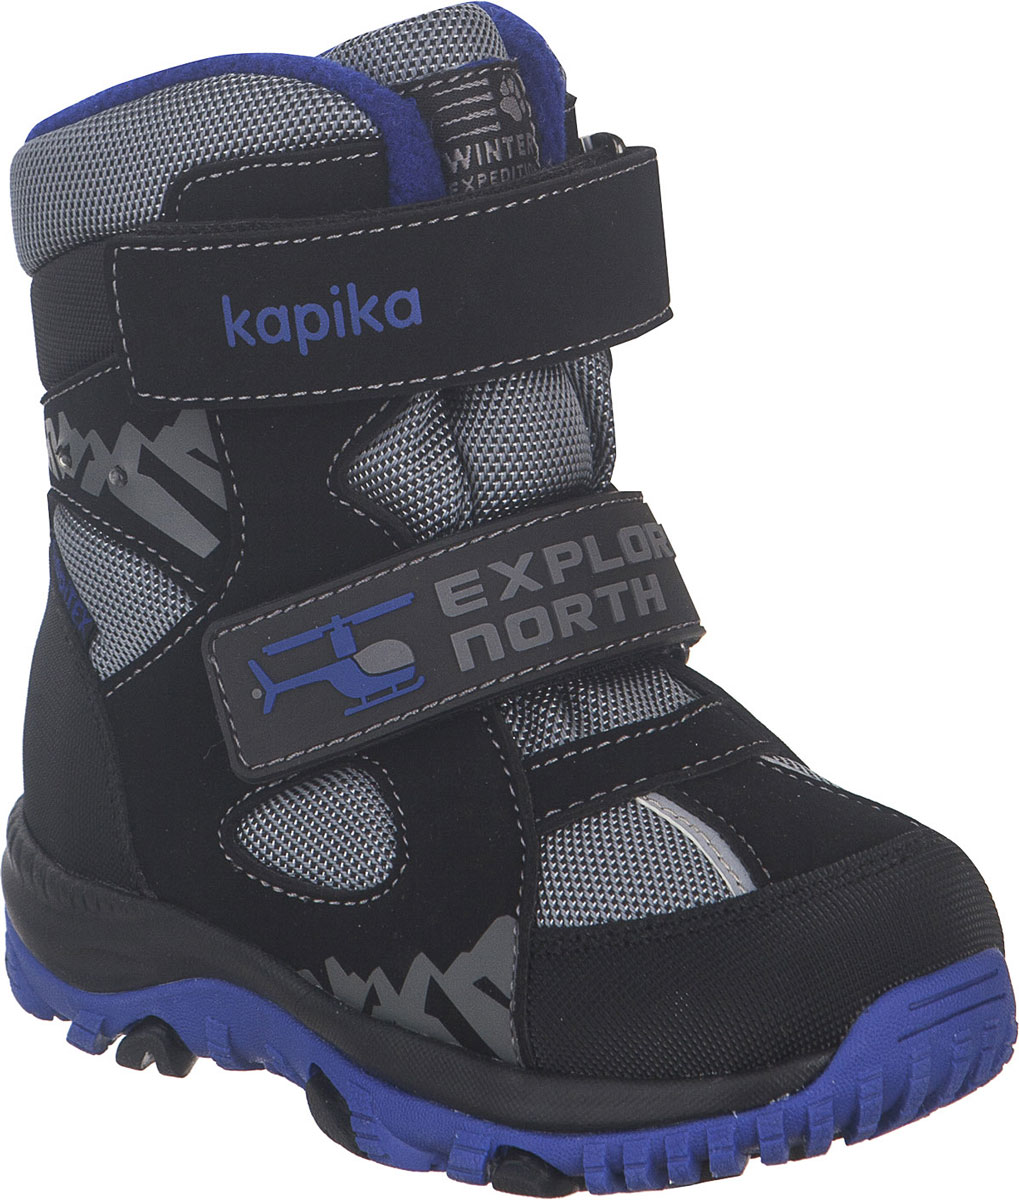 Ботинки для мальчика Kapika, цвет: черный, серый, синий. 41229-2. Размер 24